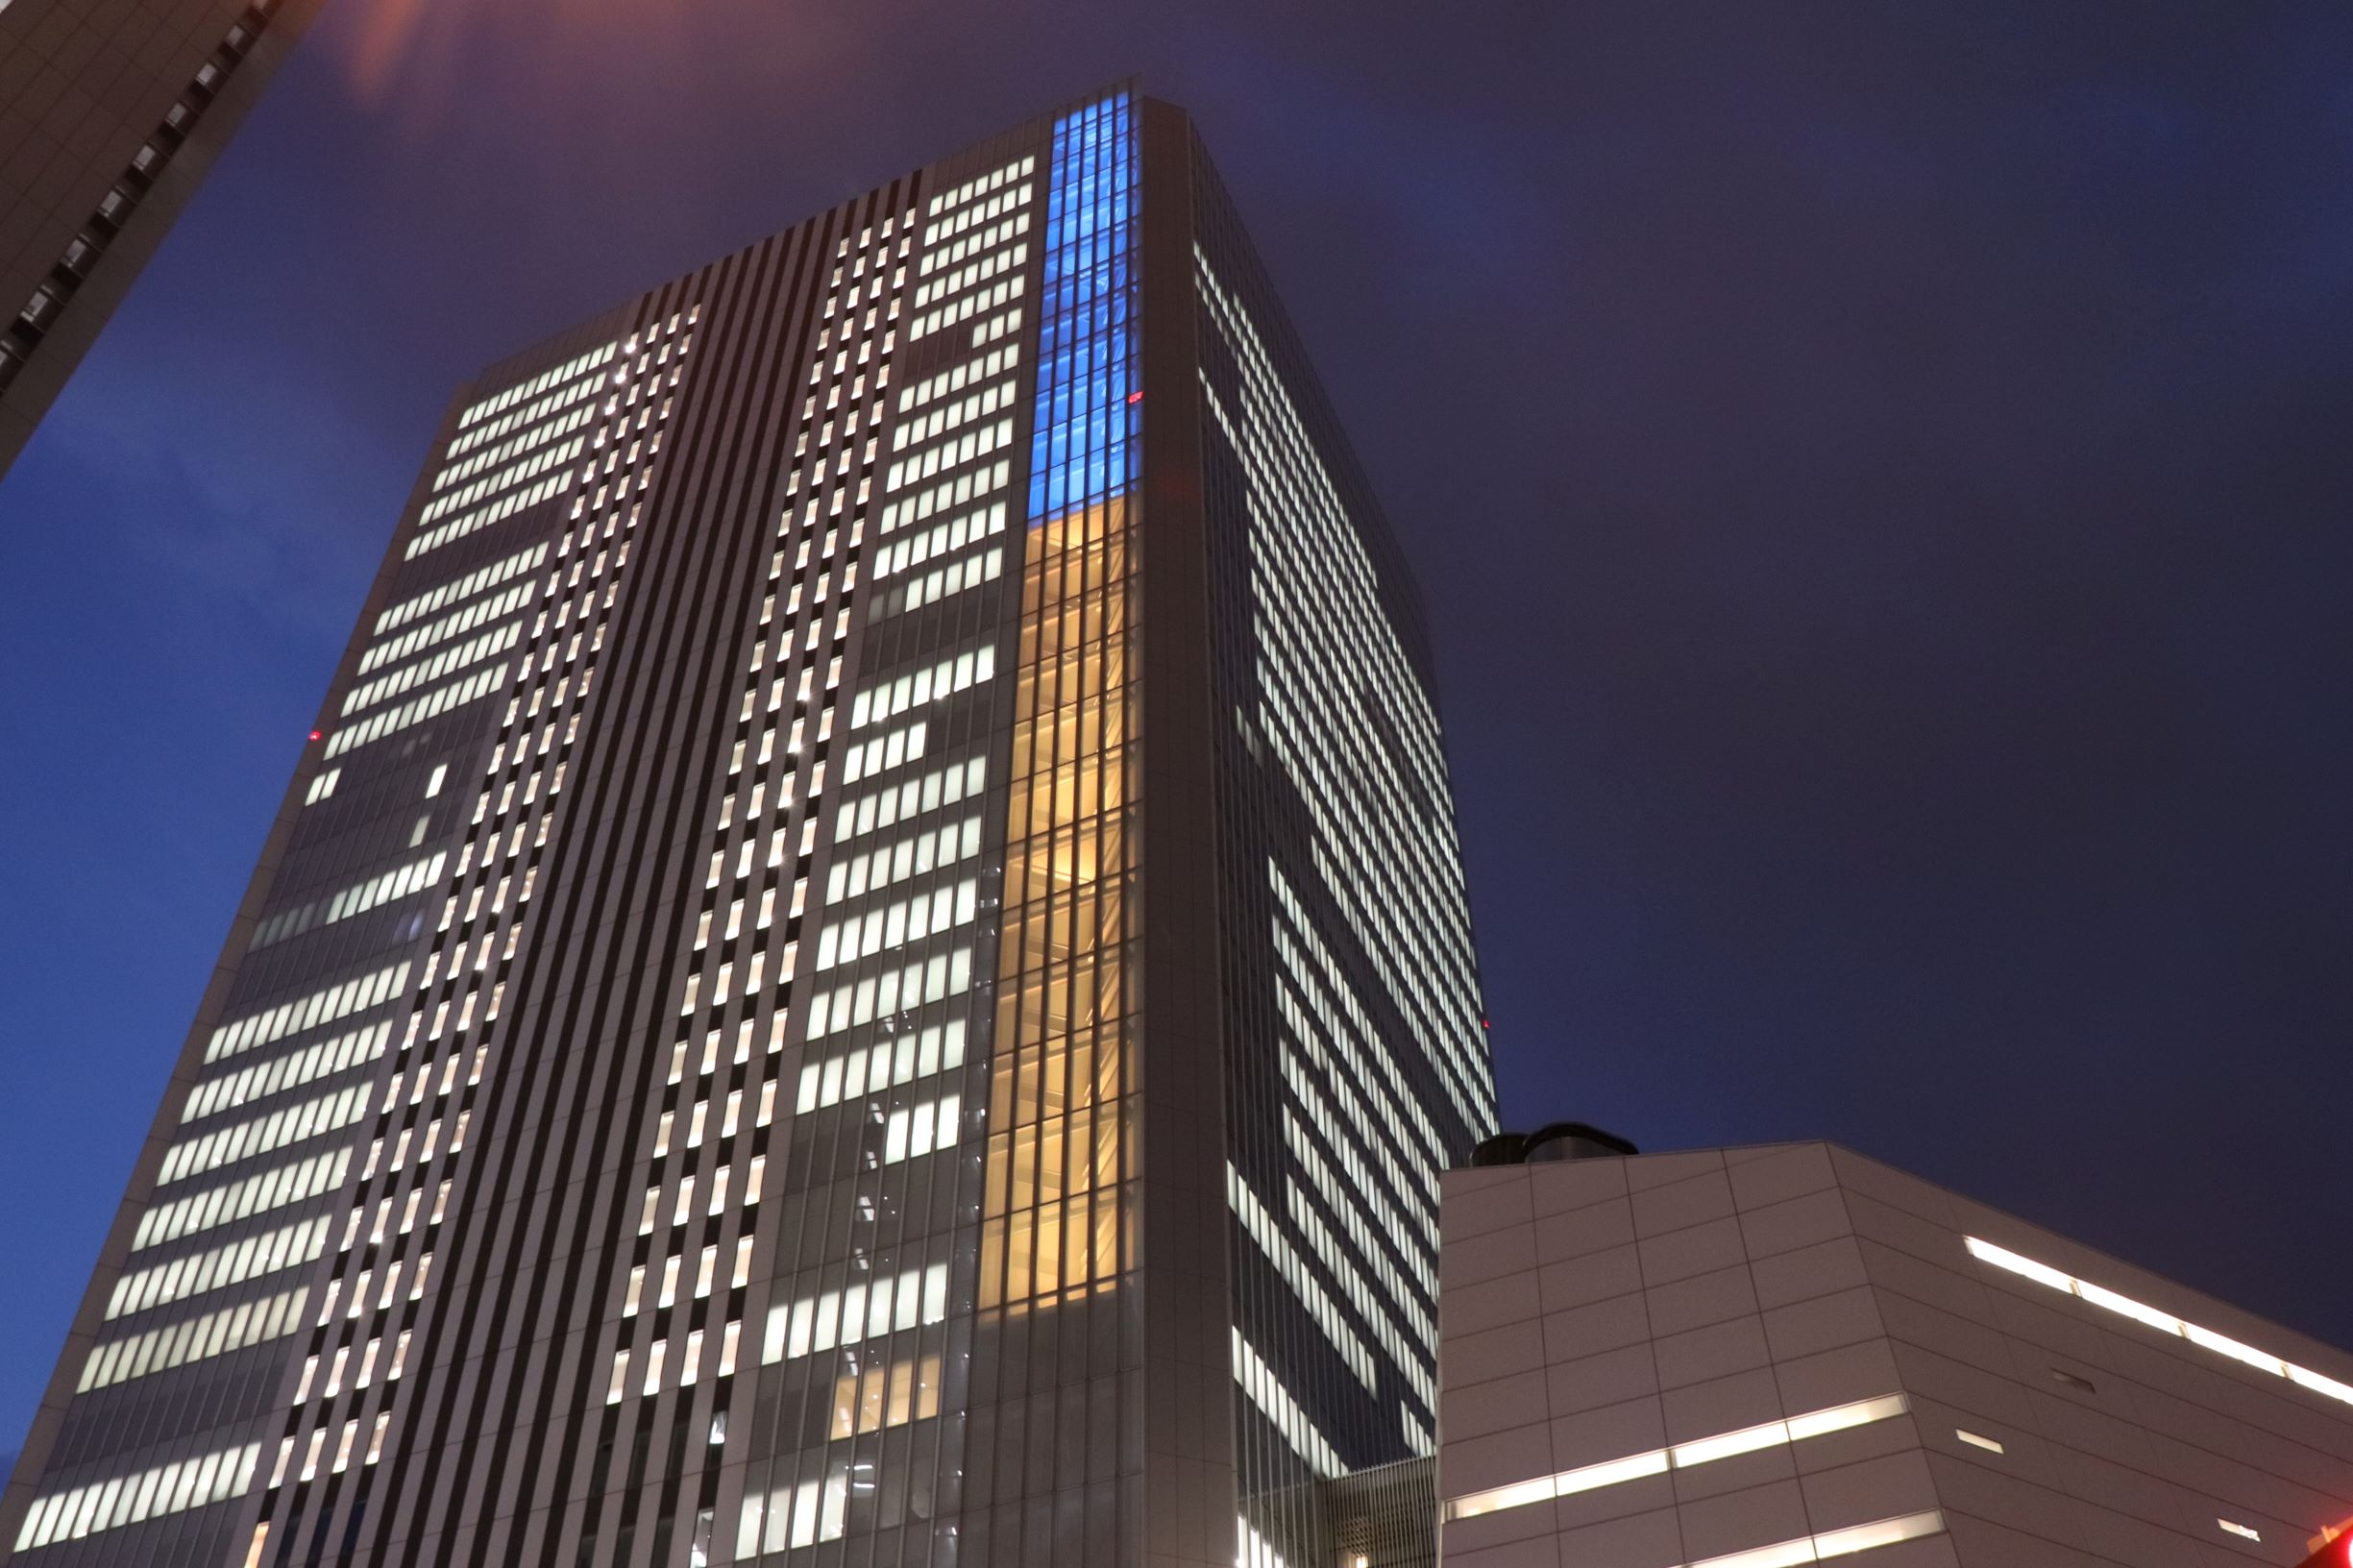 Yokohama City Hall illuminated in the colors of the Ukrainian flag